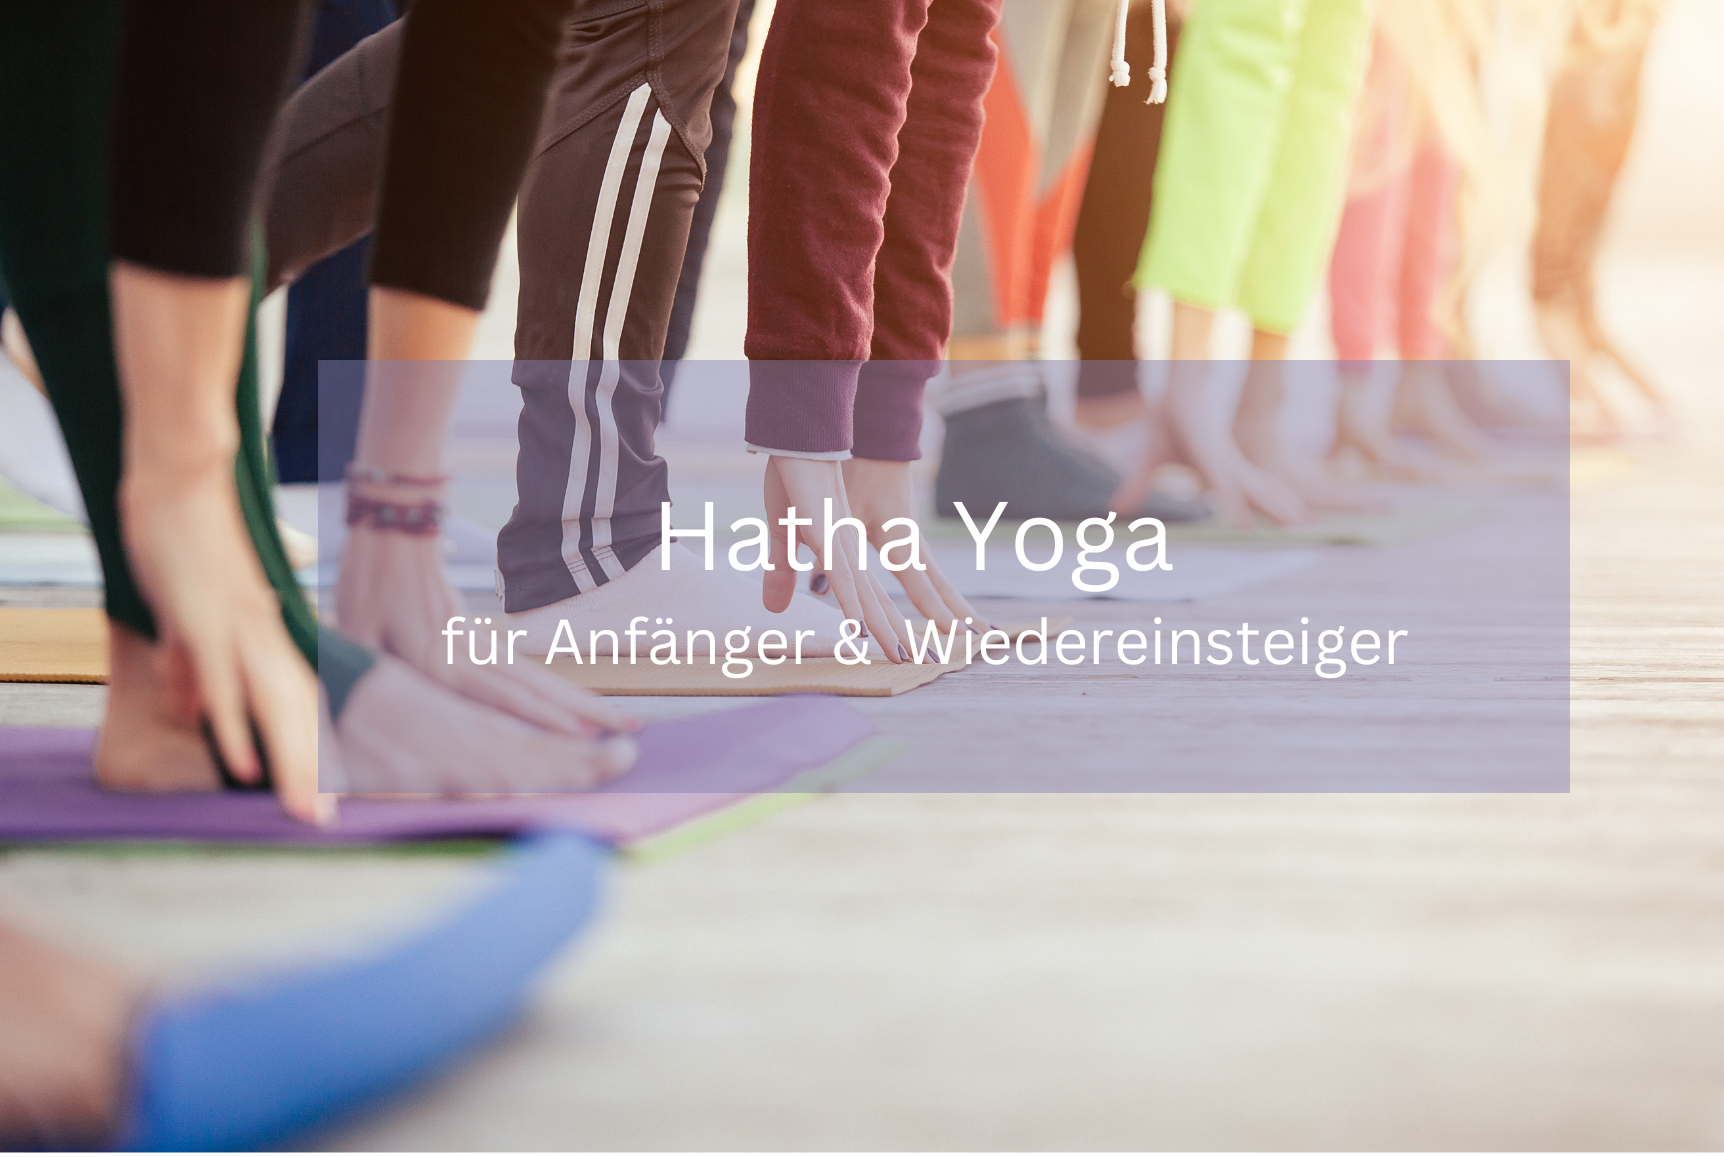 Mehr über den Artikel erfahren Ab August kassenzertifizierter Kurs – Hatha Yoga für Anfänger und Wiedereinsteiger